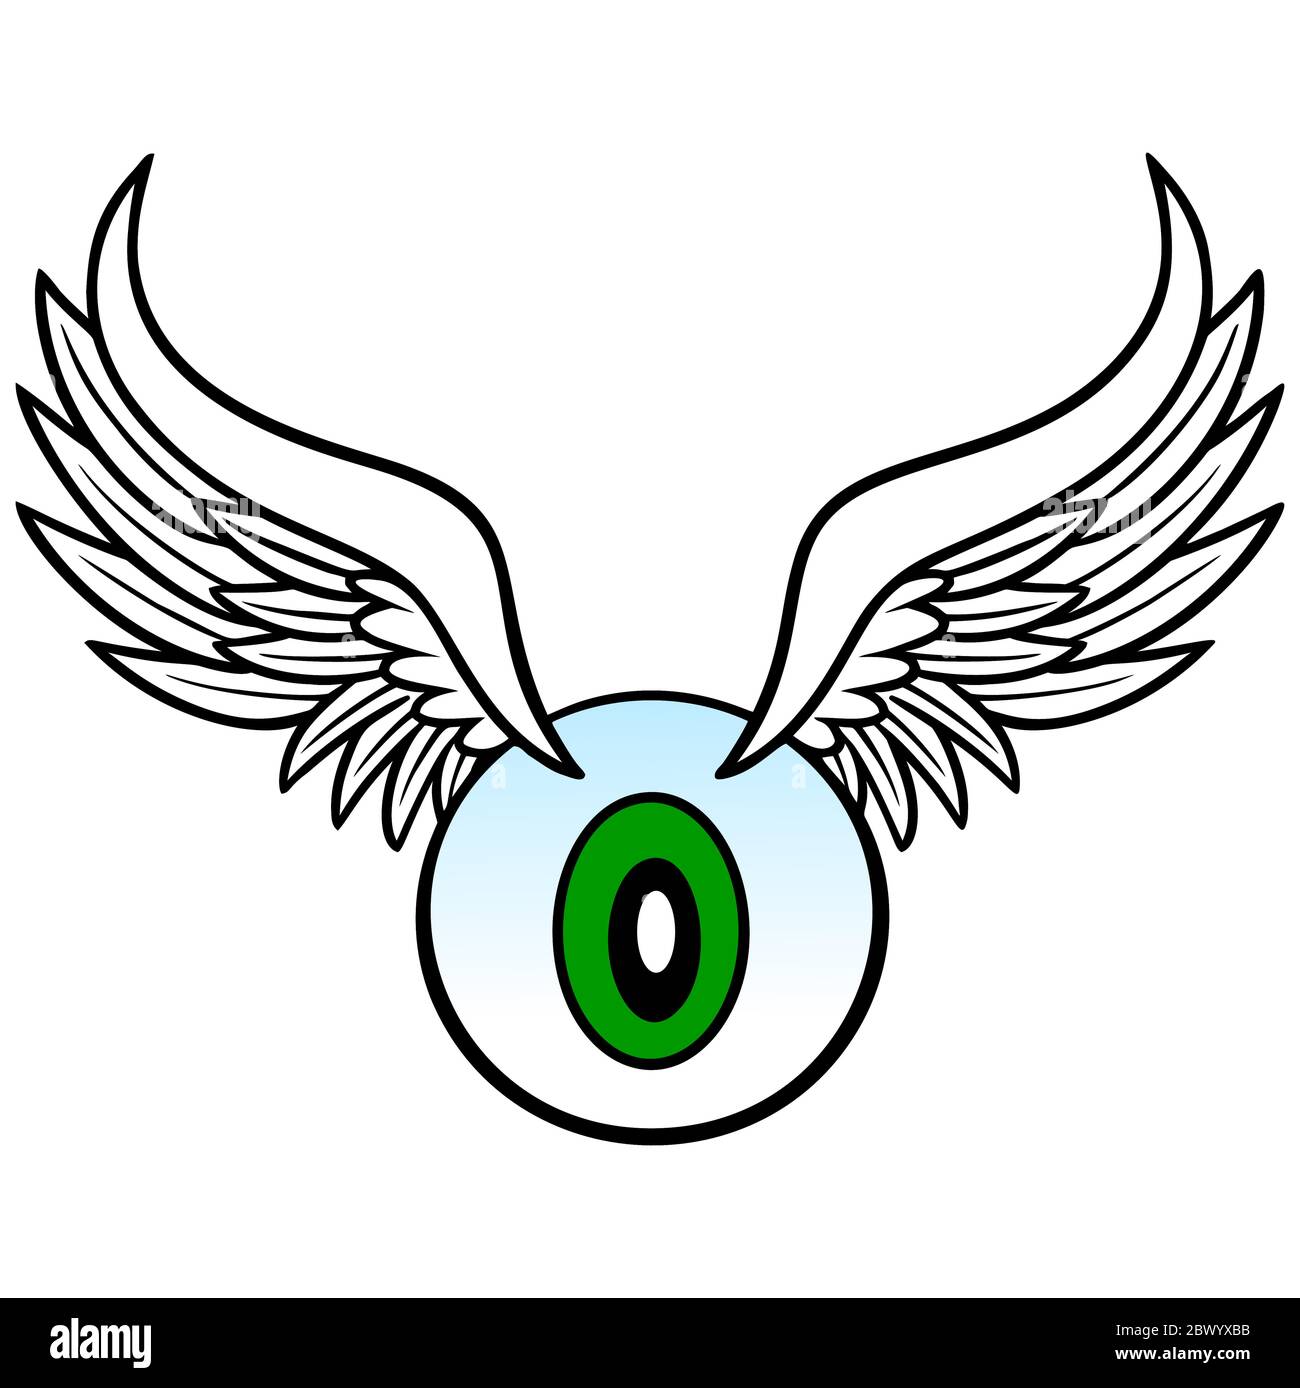 Augapfel mit Flügeln - eine Illustration eines Augapfels mit Flügeln. Stock Vektor